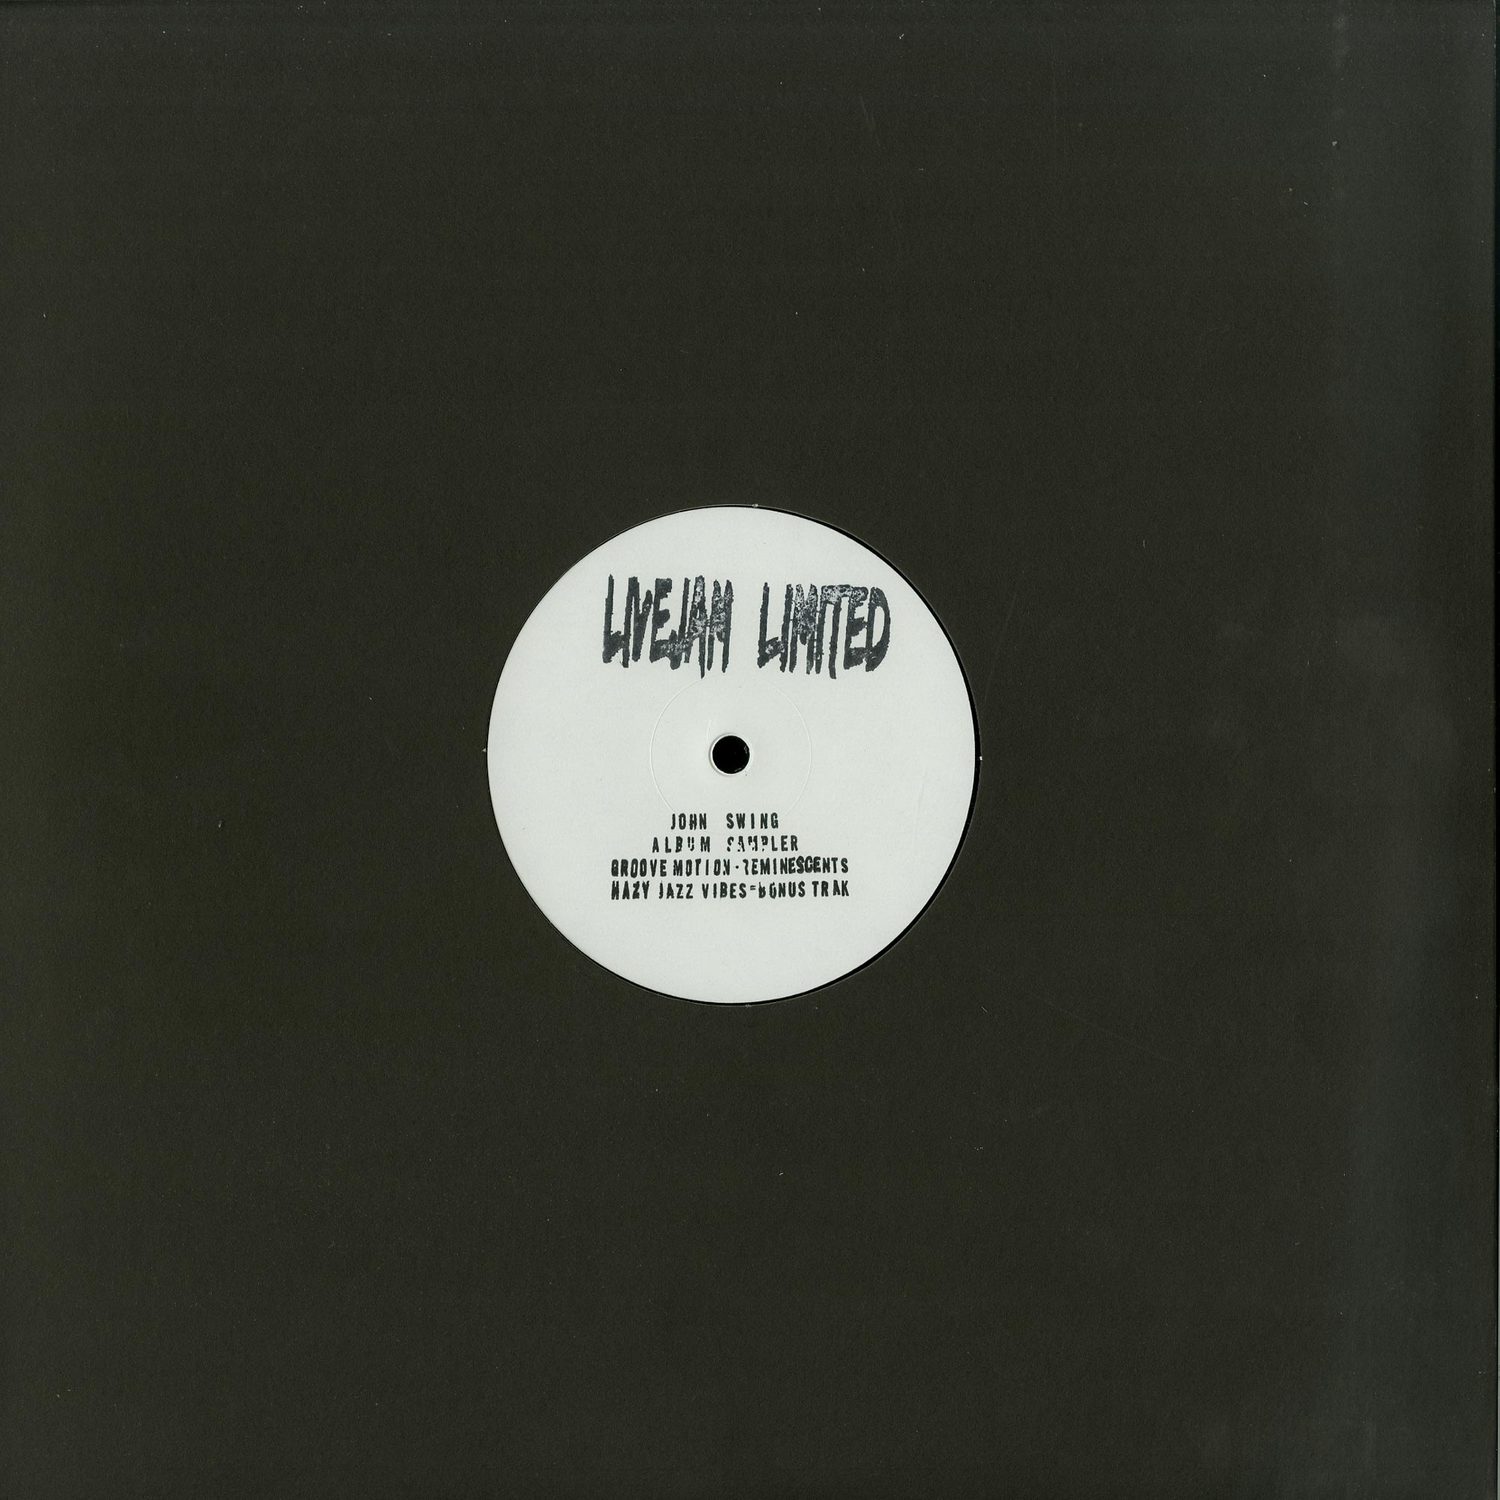 John Swing - Album Sampler